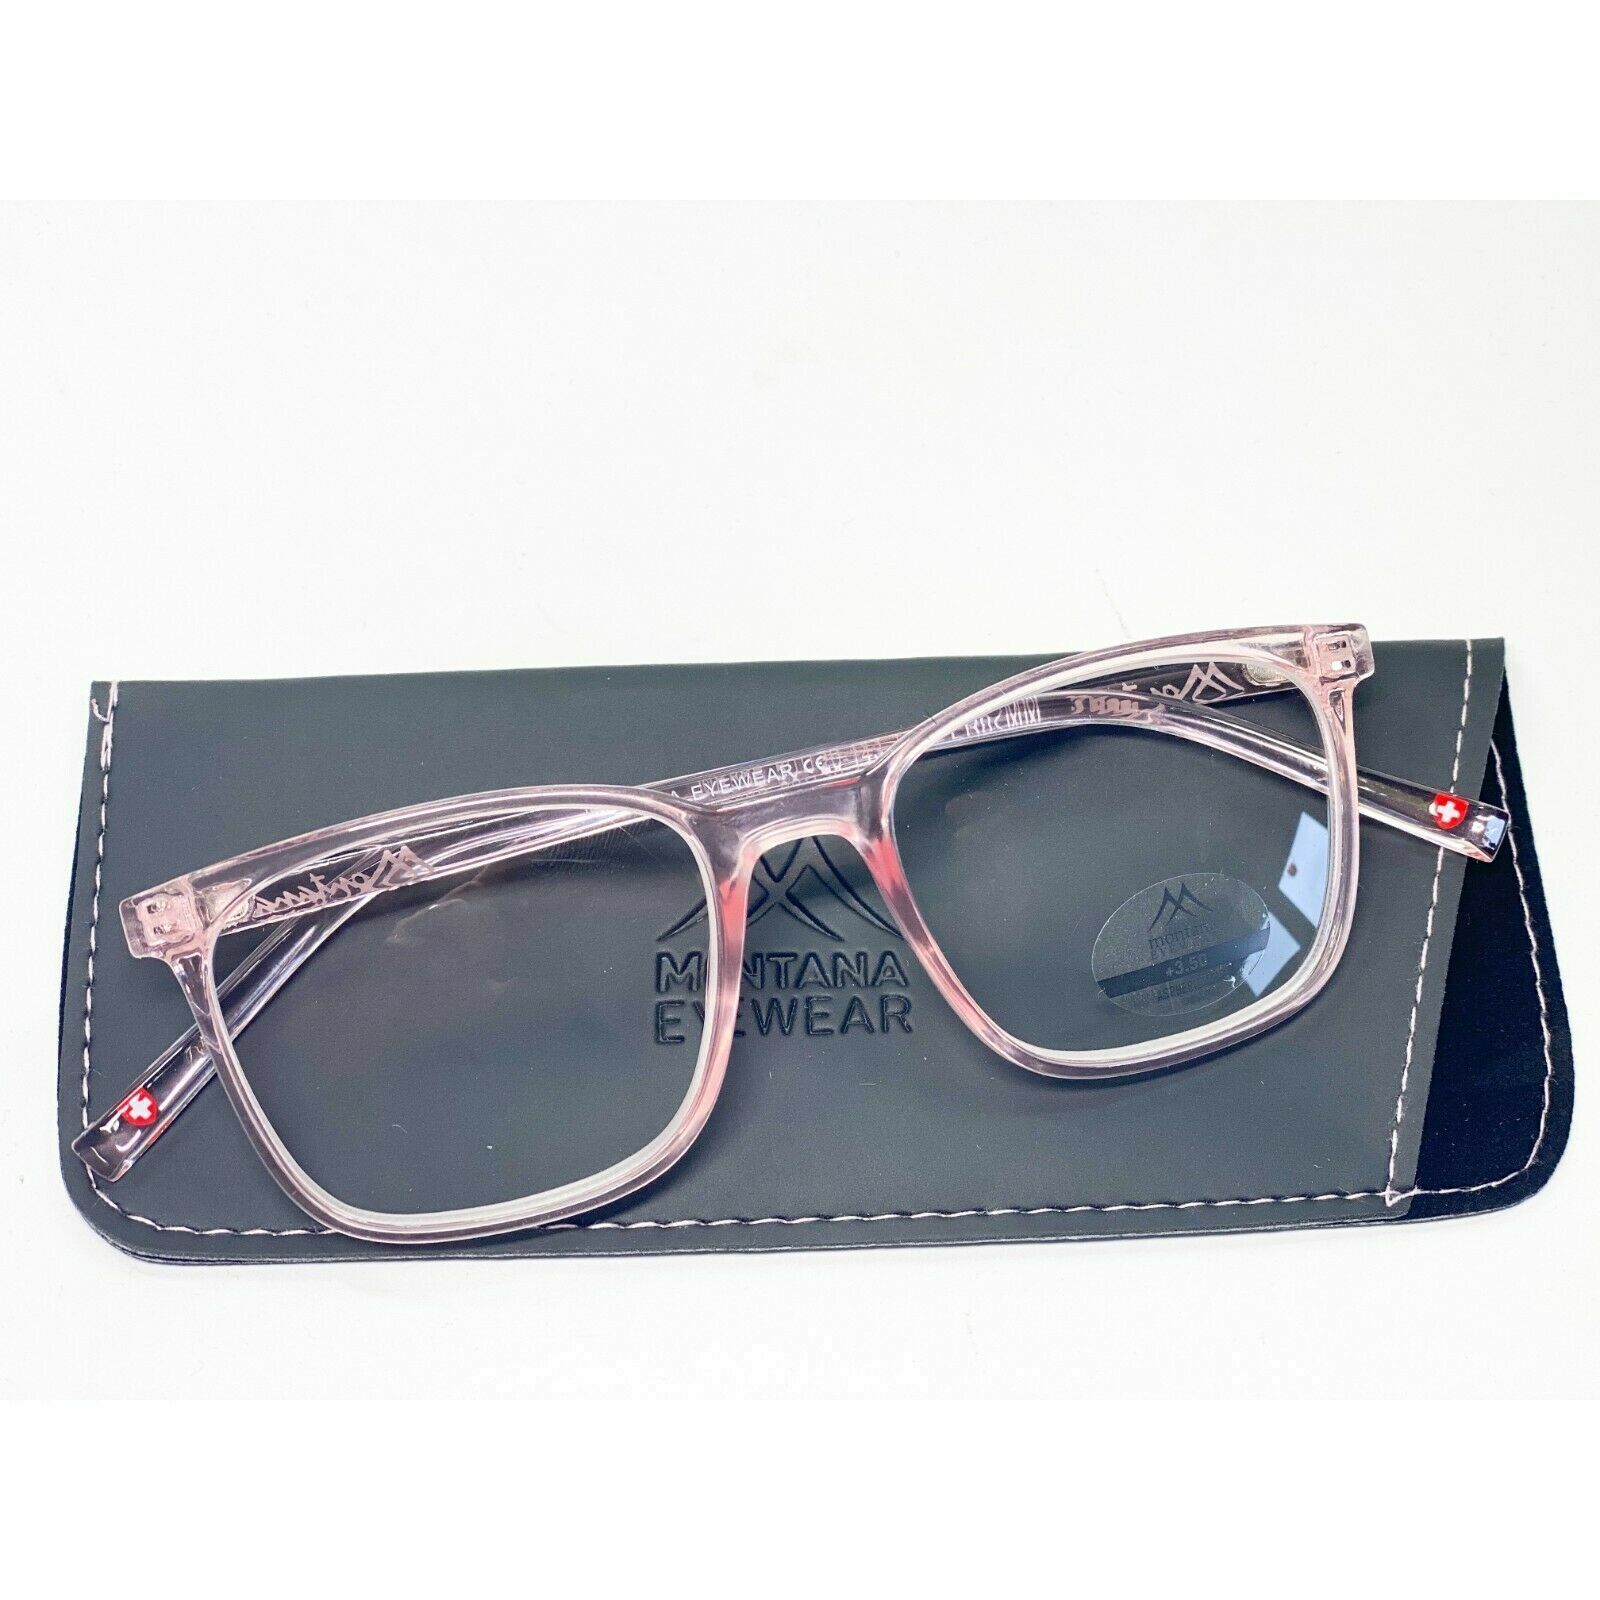 1 Damen Lesebrille Lesehilfe rosa Kunststoff Brille 1,0 1,5 2,0 2,5 3,0 3,5 Neu